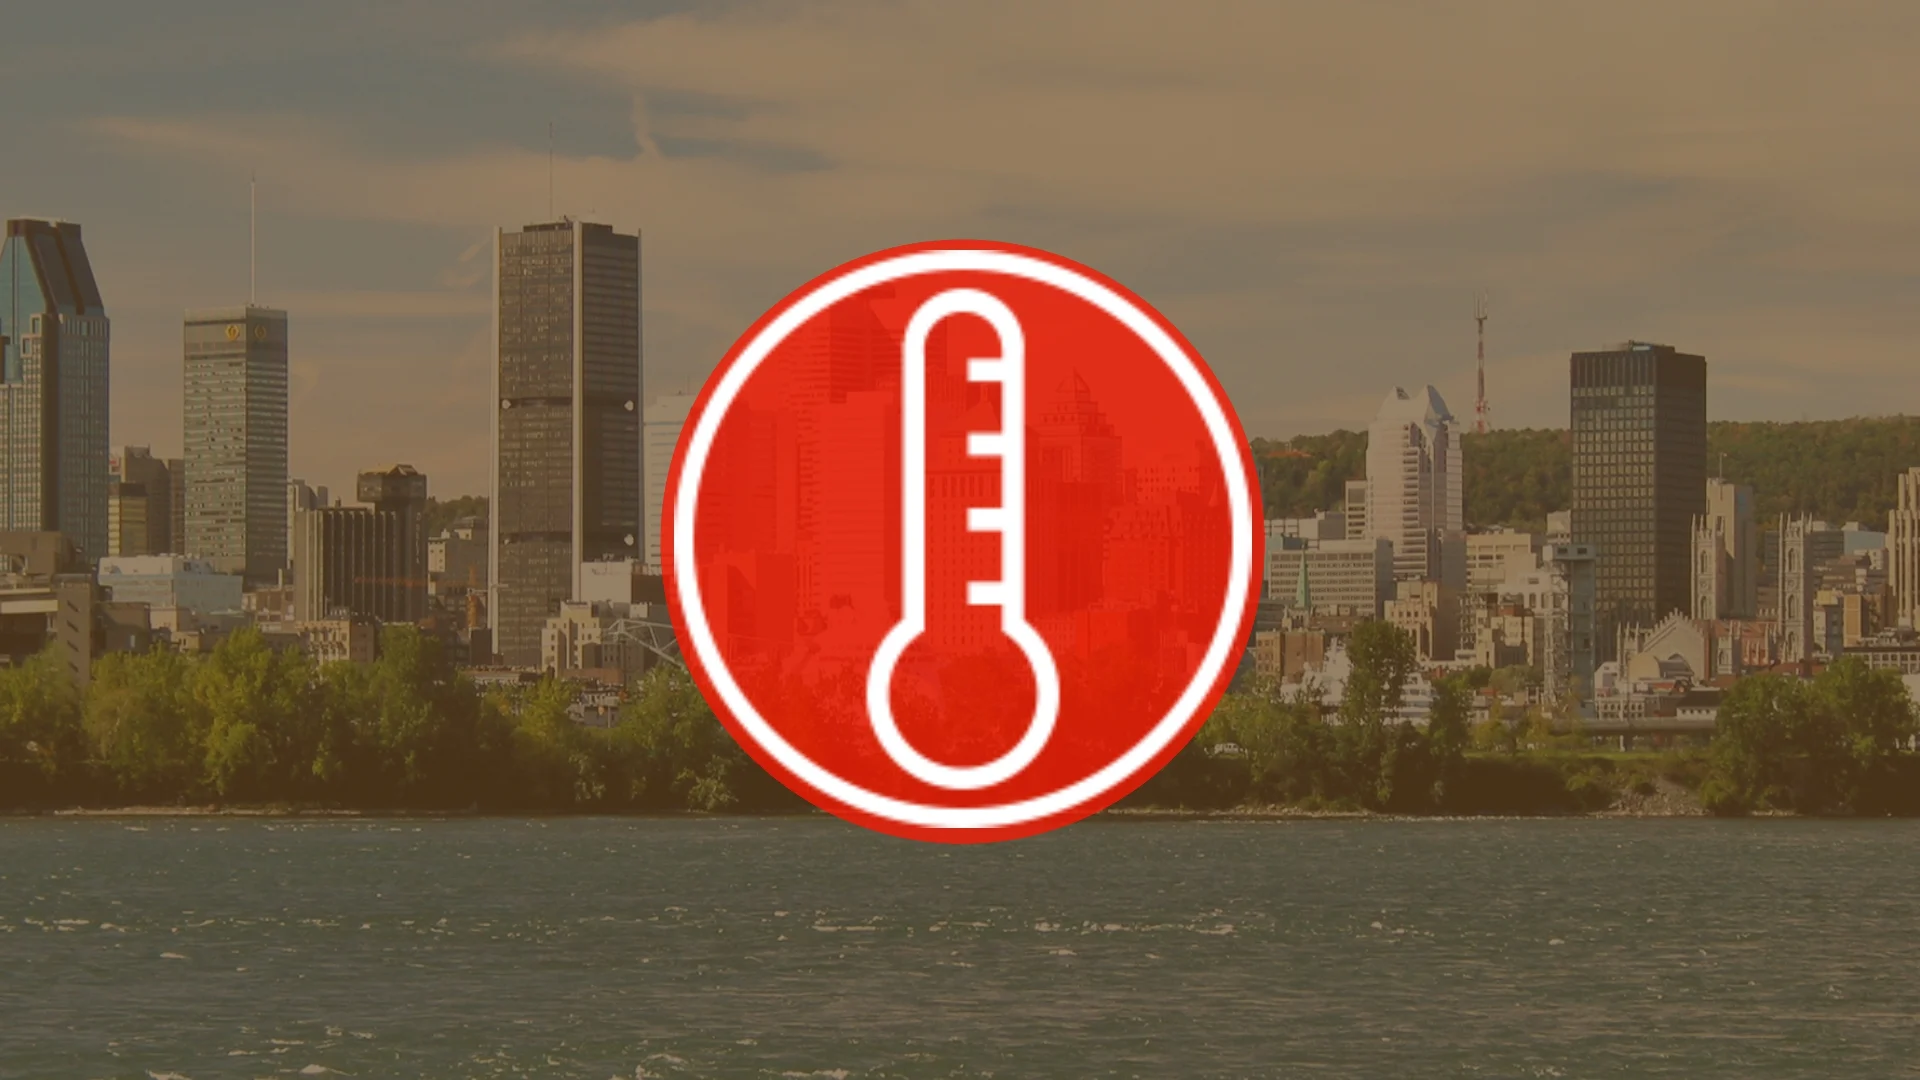 Semaine chaude et humide : quand le Québec doit prendre son mal en patience